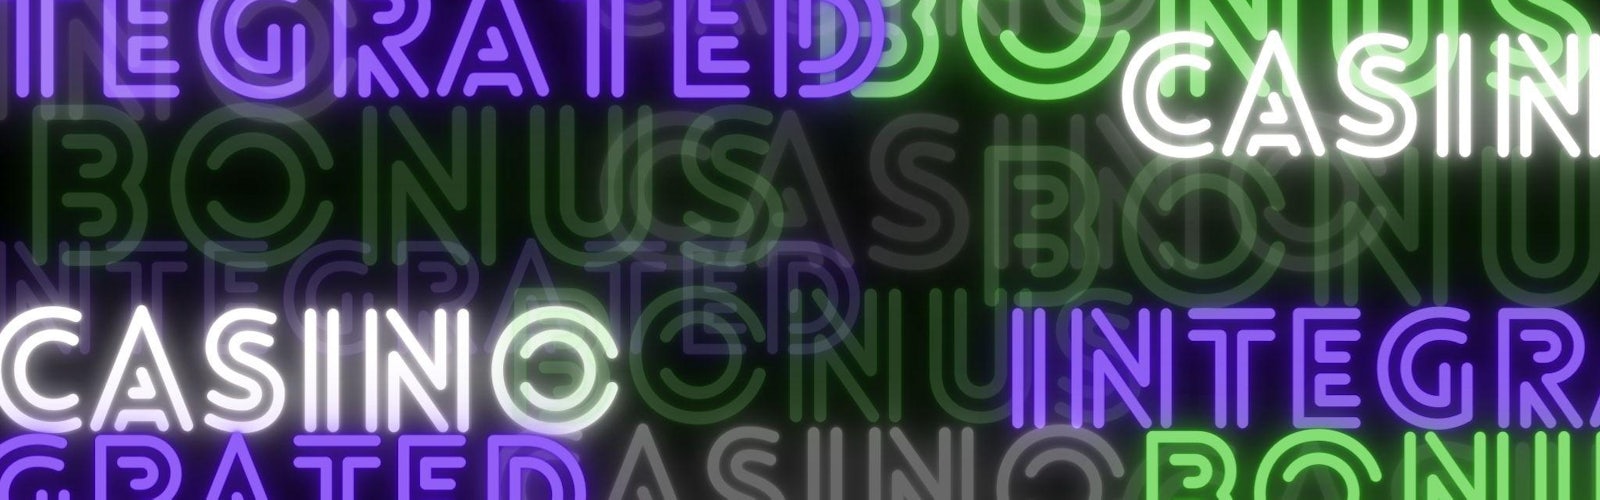 黒色の背景にネオン系のフォント（紫、緑、白色）で「Integrated」「Casino」「Bonus」とバラバラに描かれている背景。